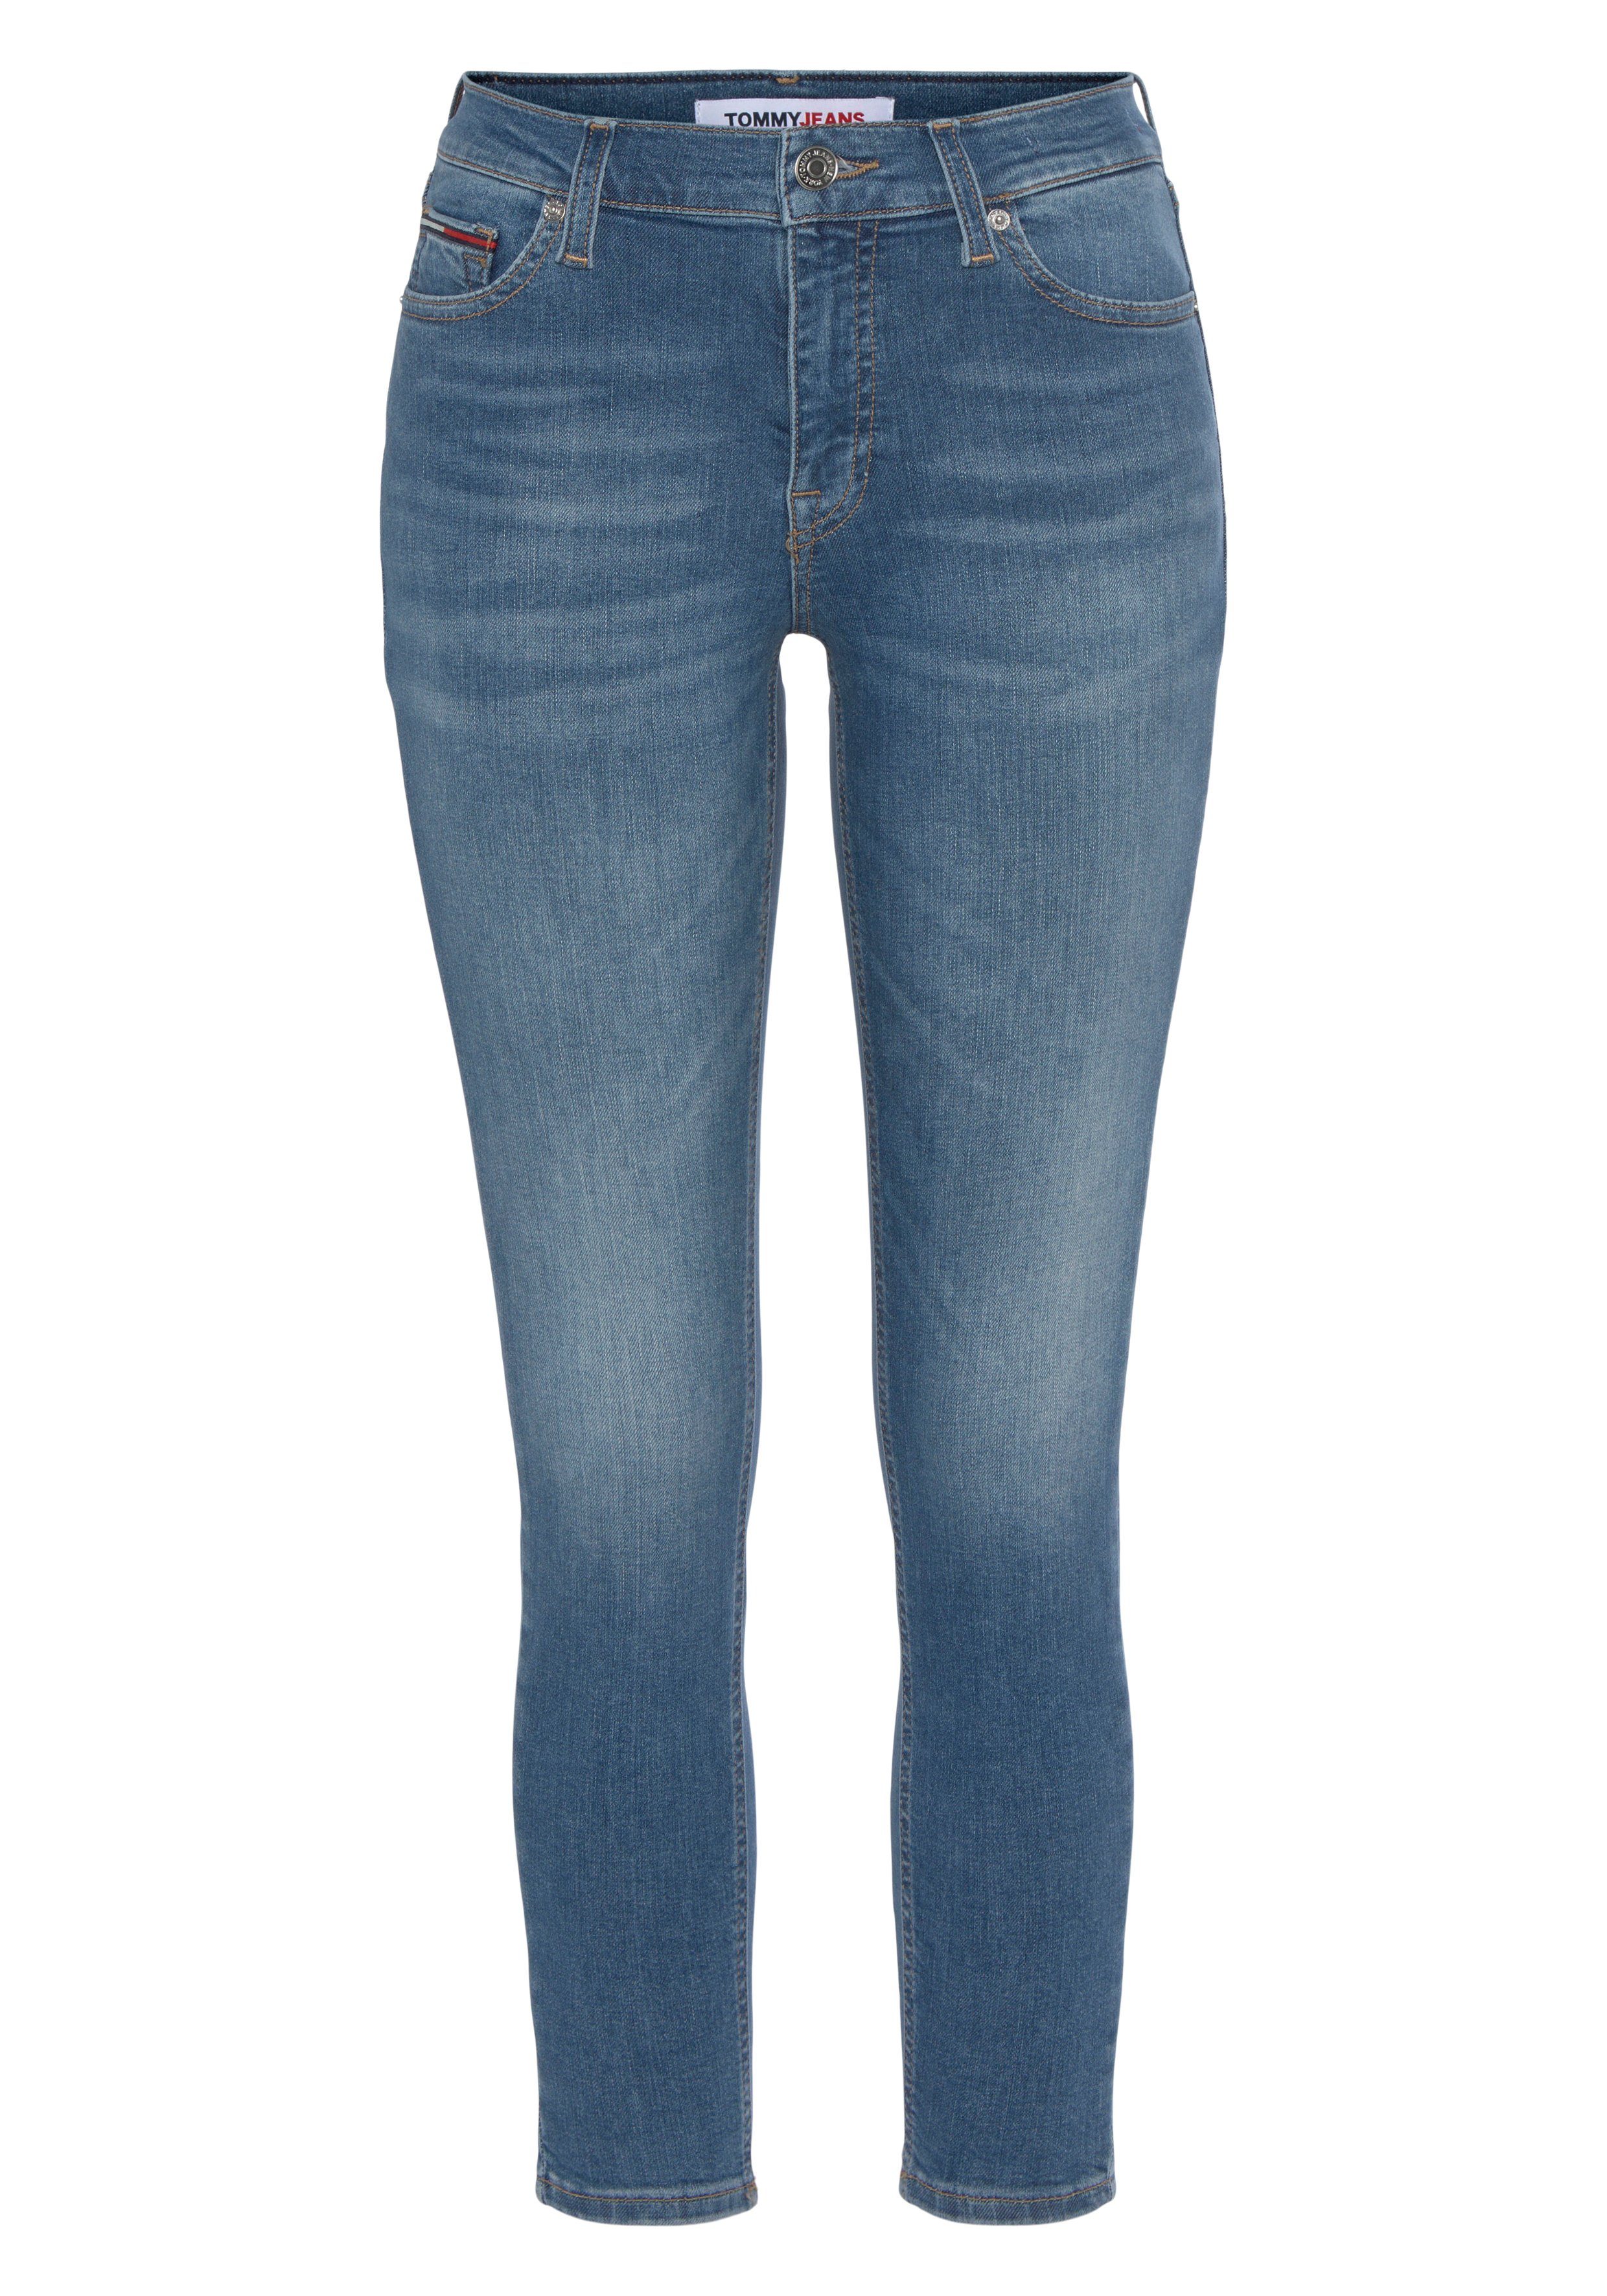 Tommy Jeans für Logostickerei, Baumwollstretch gute Denim mit Passform eine Skinny-fit-Jeans Logobadge und